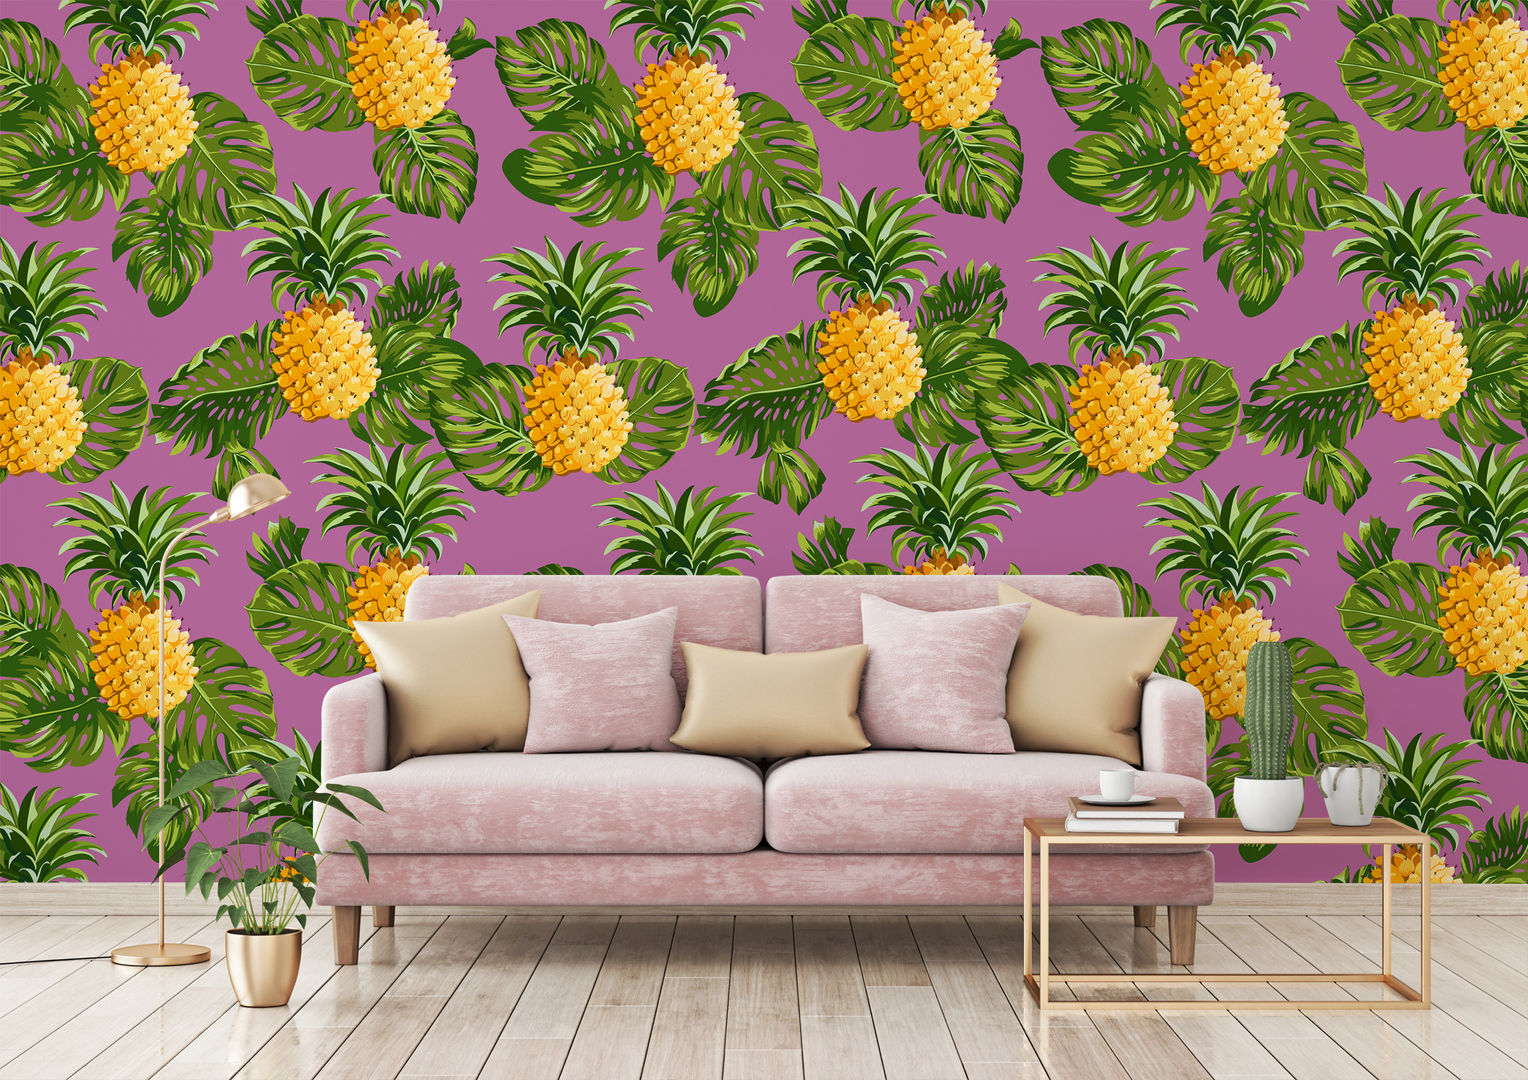 HYPNOTIC PINEAPPLES Pixers トロピカルデザインの リビング Pixers,pink,pineapple,wallmural,wallpaper,tropical